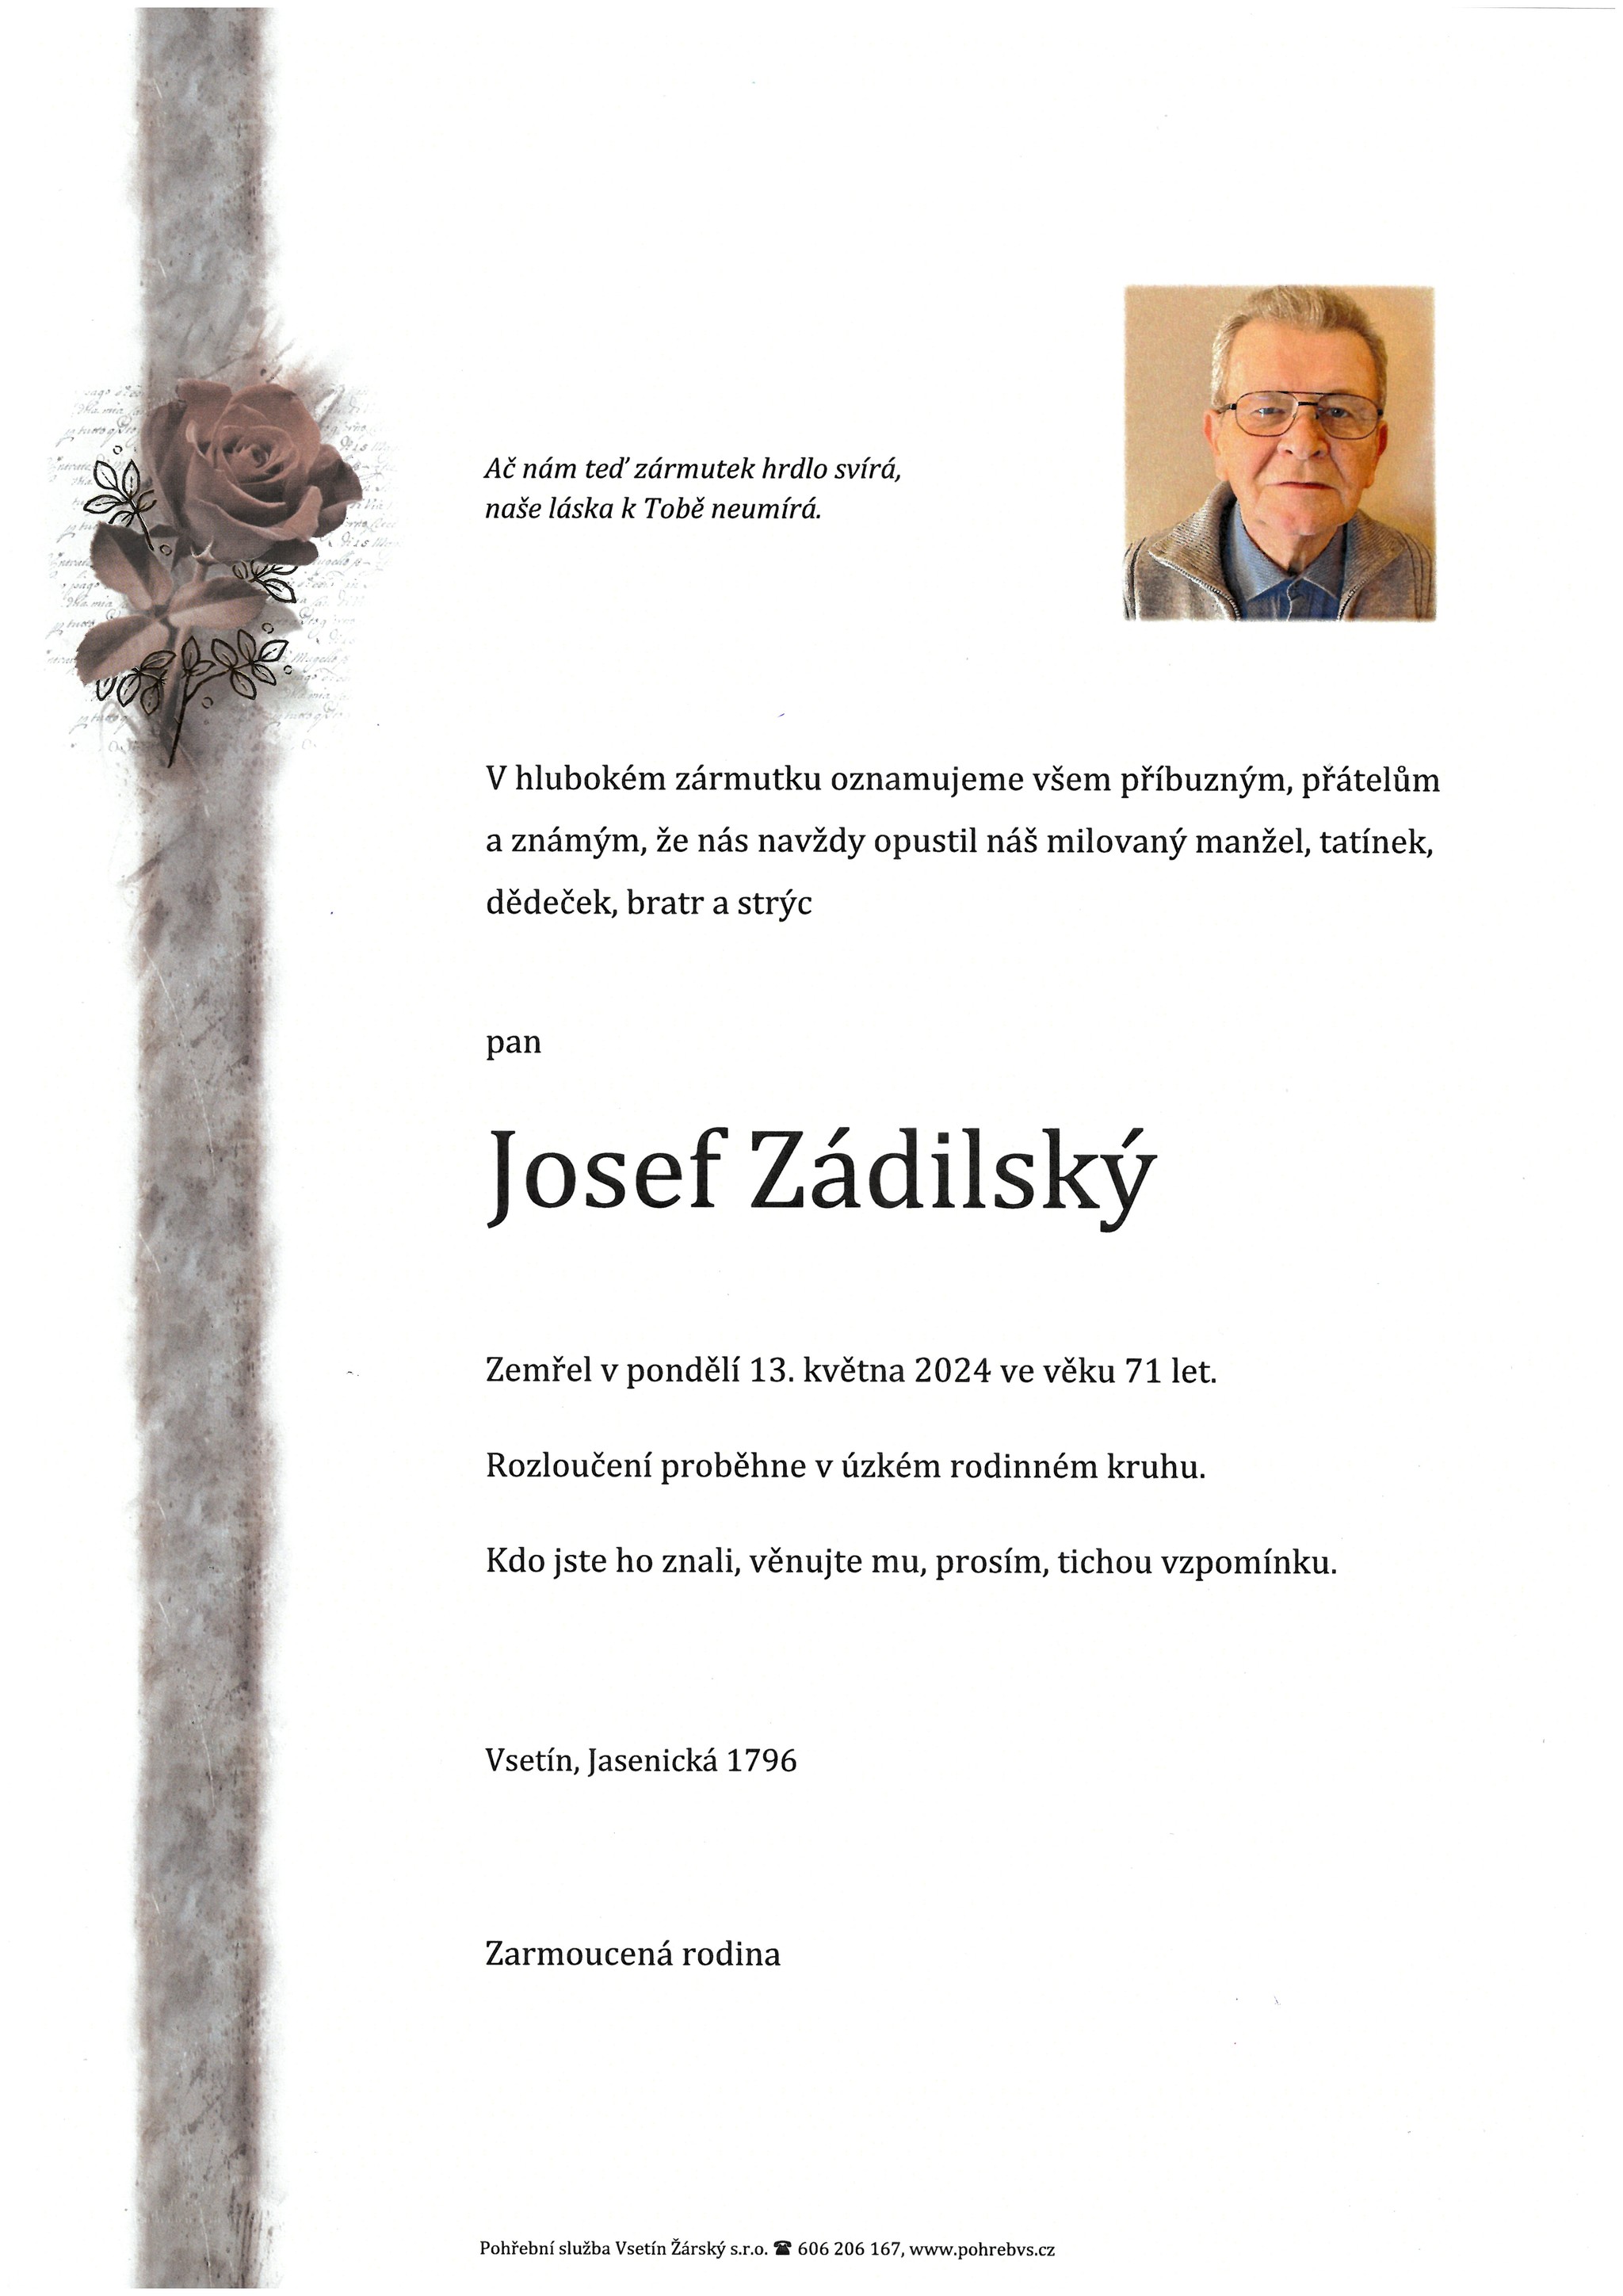 Josef Zádilský